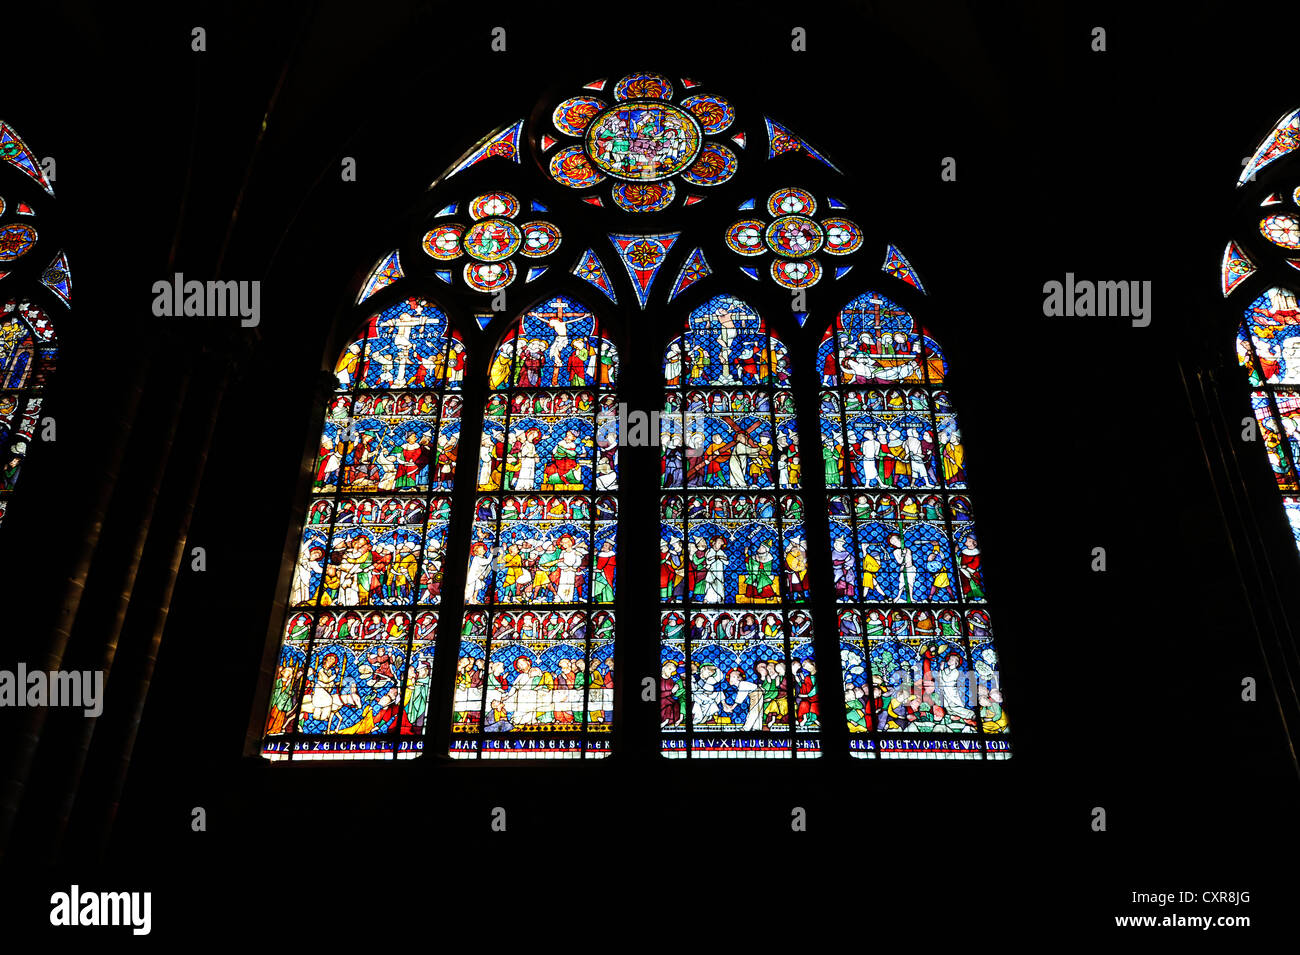 Vitraux, fenêtre de l'église, dans le nord de la nef, vue de l'intérieur de la cathédrale de Strasbourg, La Cathédrale Notre-Dame de Strasbourg Banque D'Images